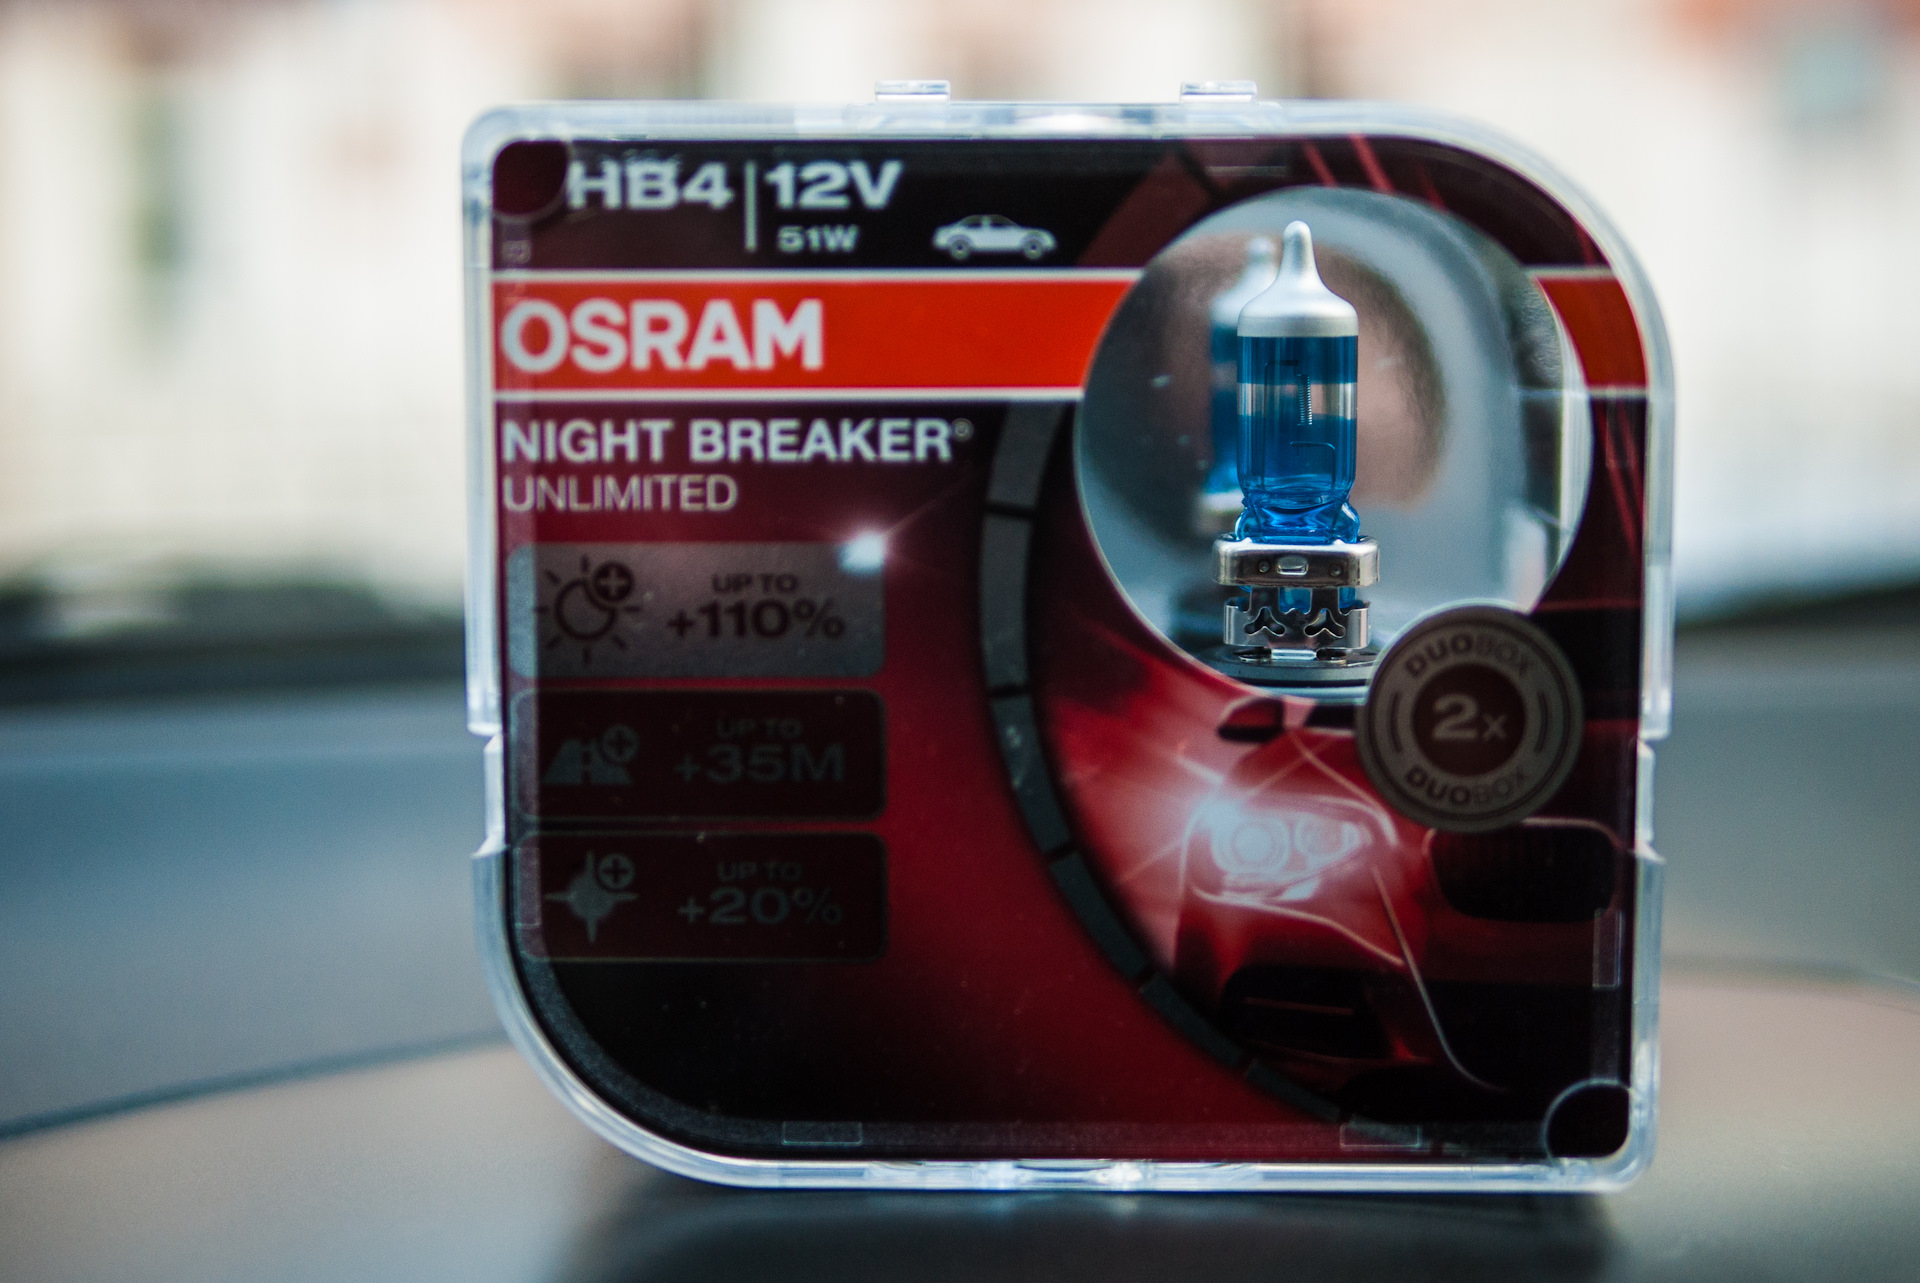 Osram Night Breaker hb4. Osram Night Breaker Unlimited. Osram Night Breaker Unlimited +110. Osram Night Breaker Unlimited +110% н1.